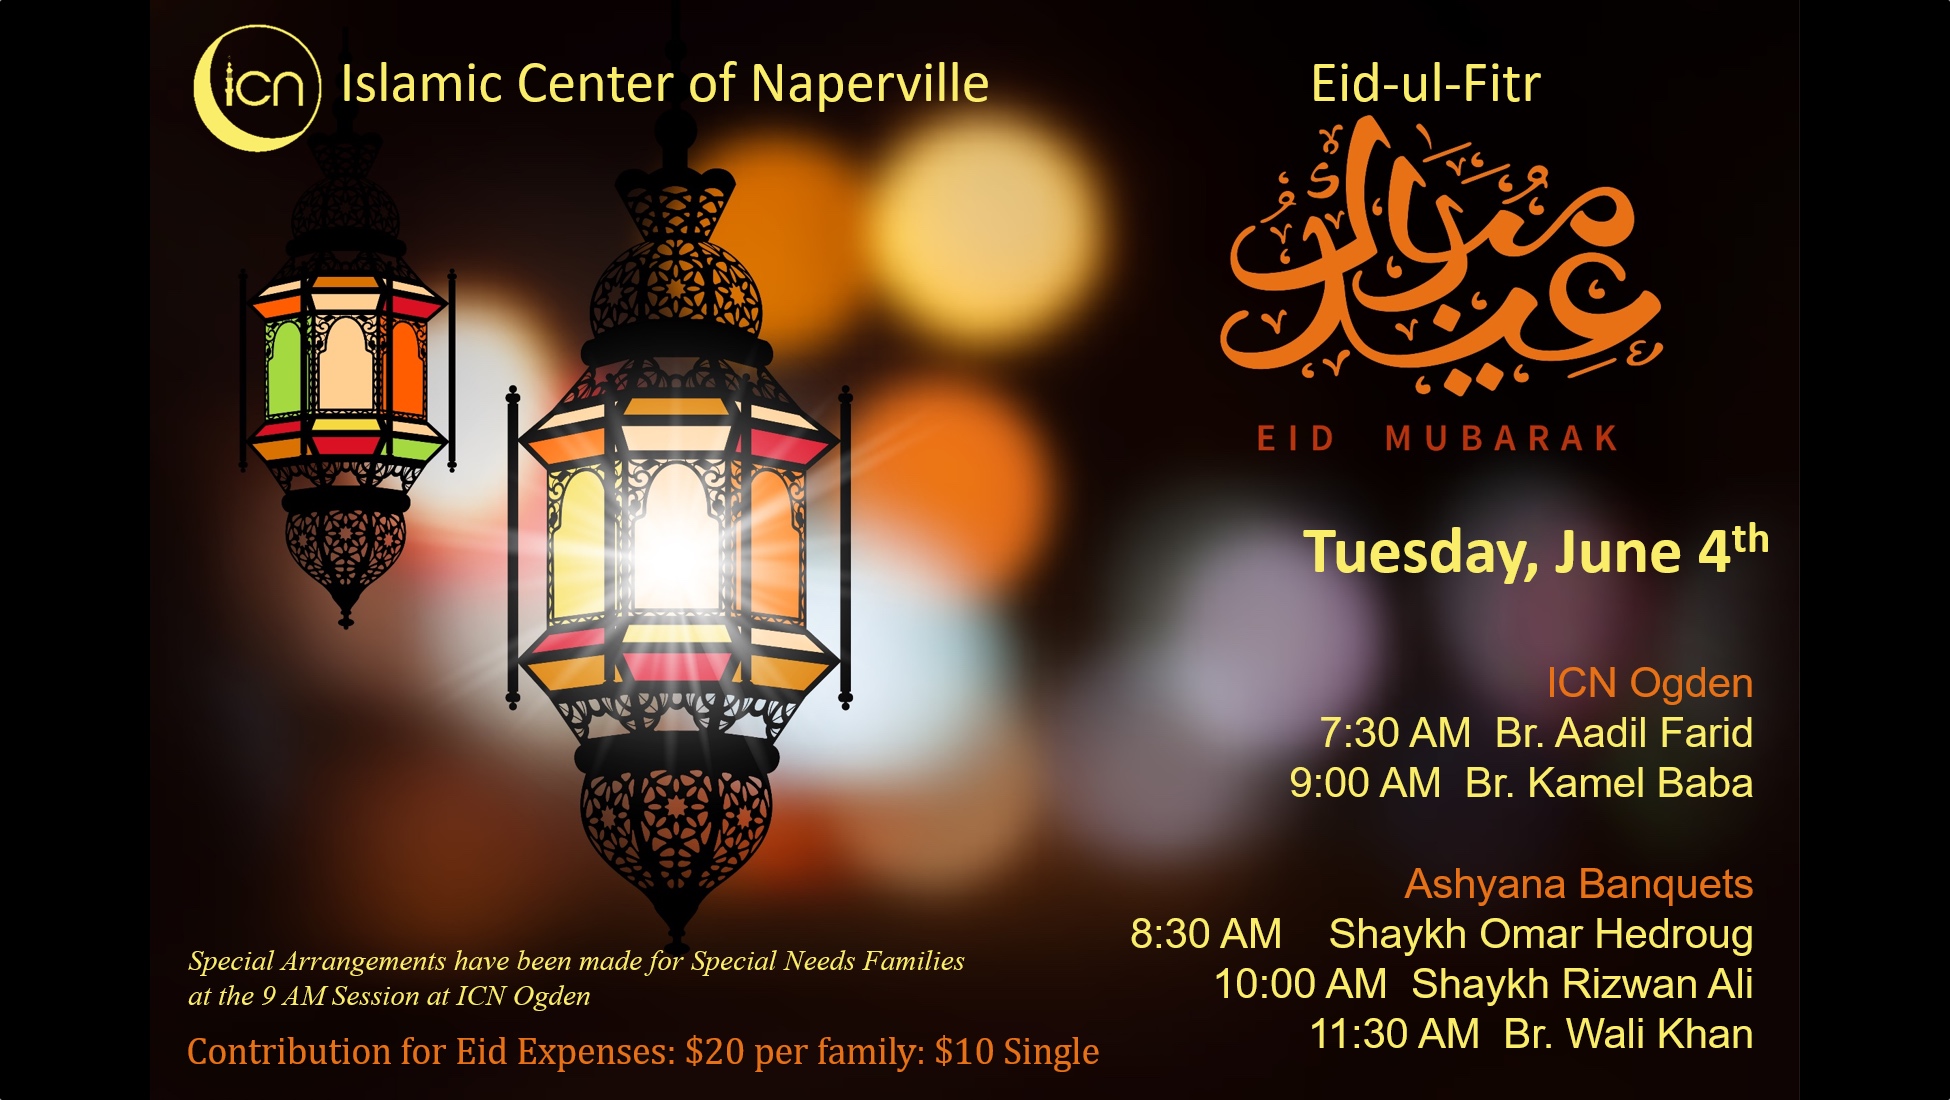 Eid-ul-Fitr on Thursday